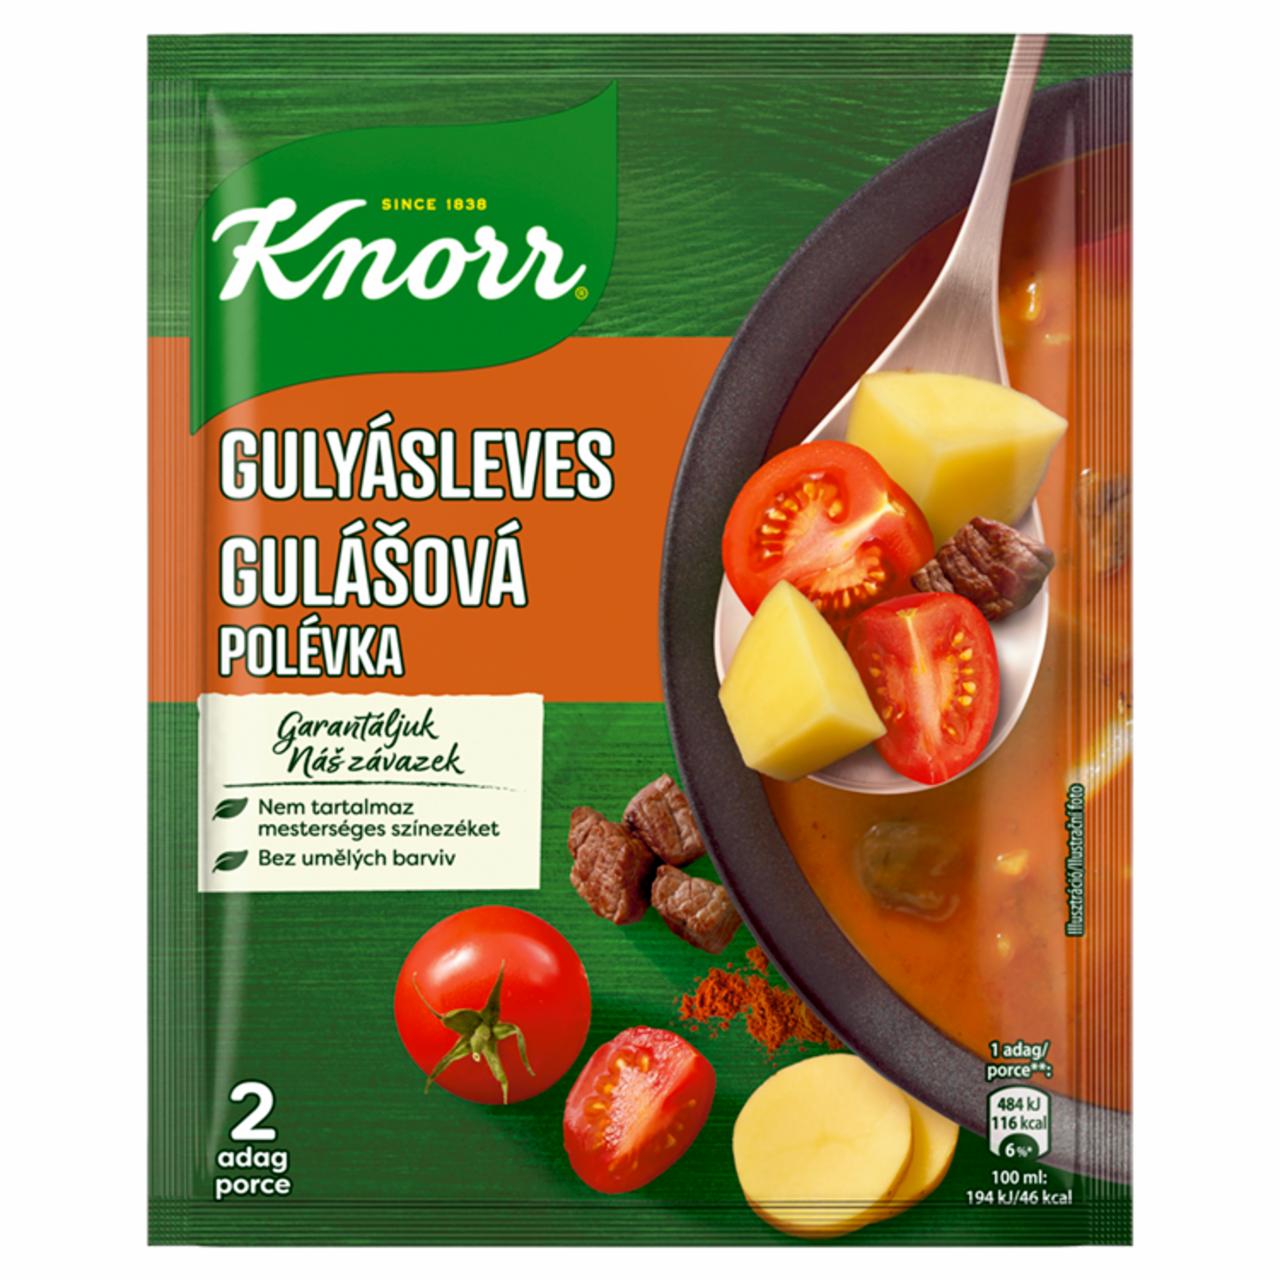 Képek - Knorr gulyásleves 60 g